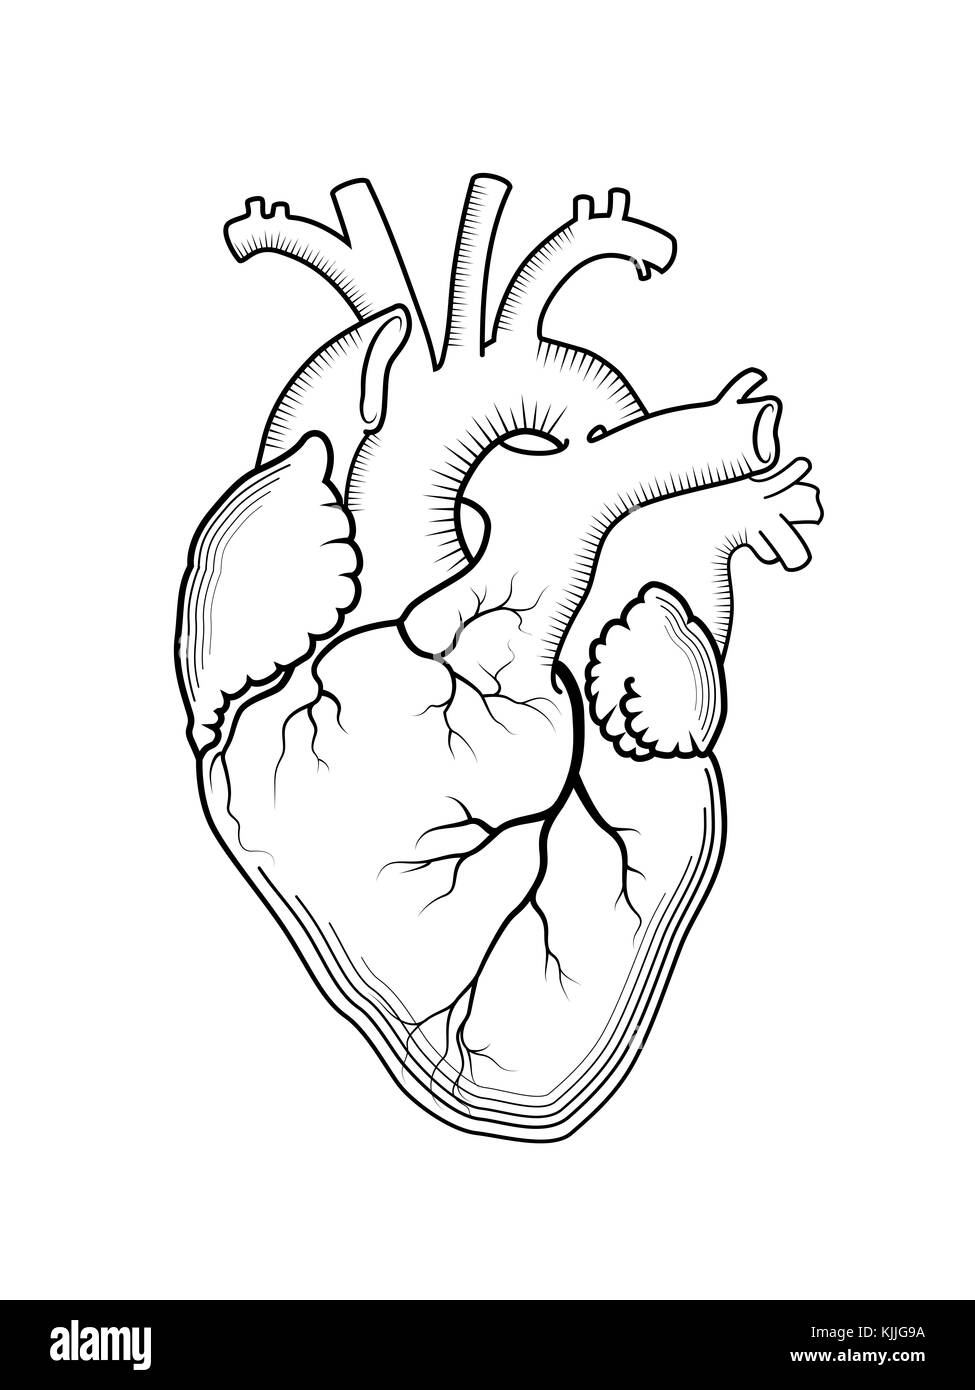 Coeur Humain Anatomie Dessin Cliparts Vectoriels Et P - vrogue.co